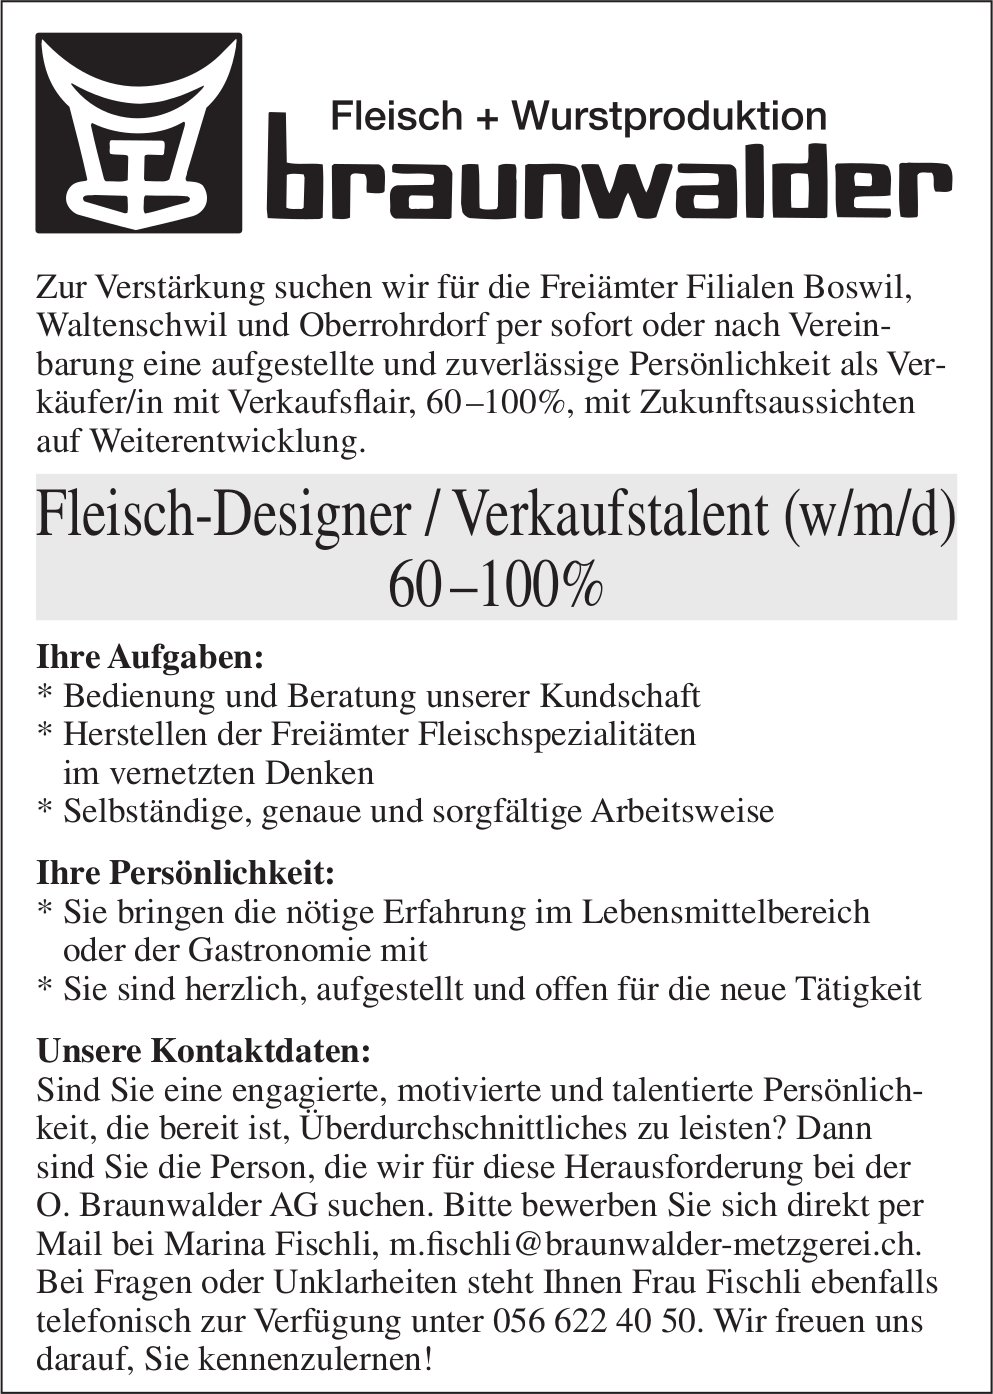 Fleisch-Designer / Verkaufstalent (w/m/d) 60 –100%, O. Braunwalder AG, Boswil, Waltenschwil und Oberrohrdorf,  gesucht